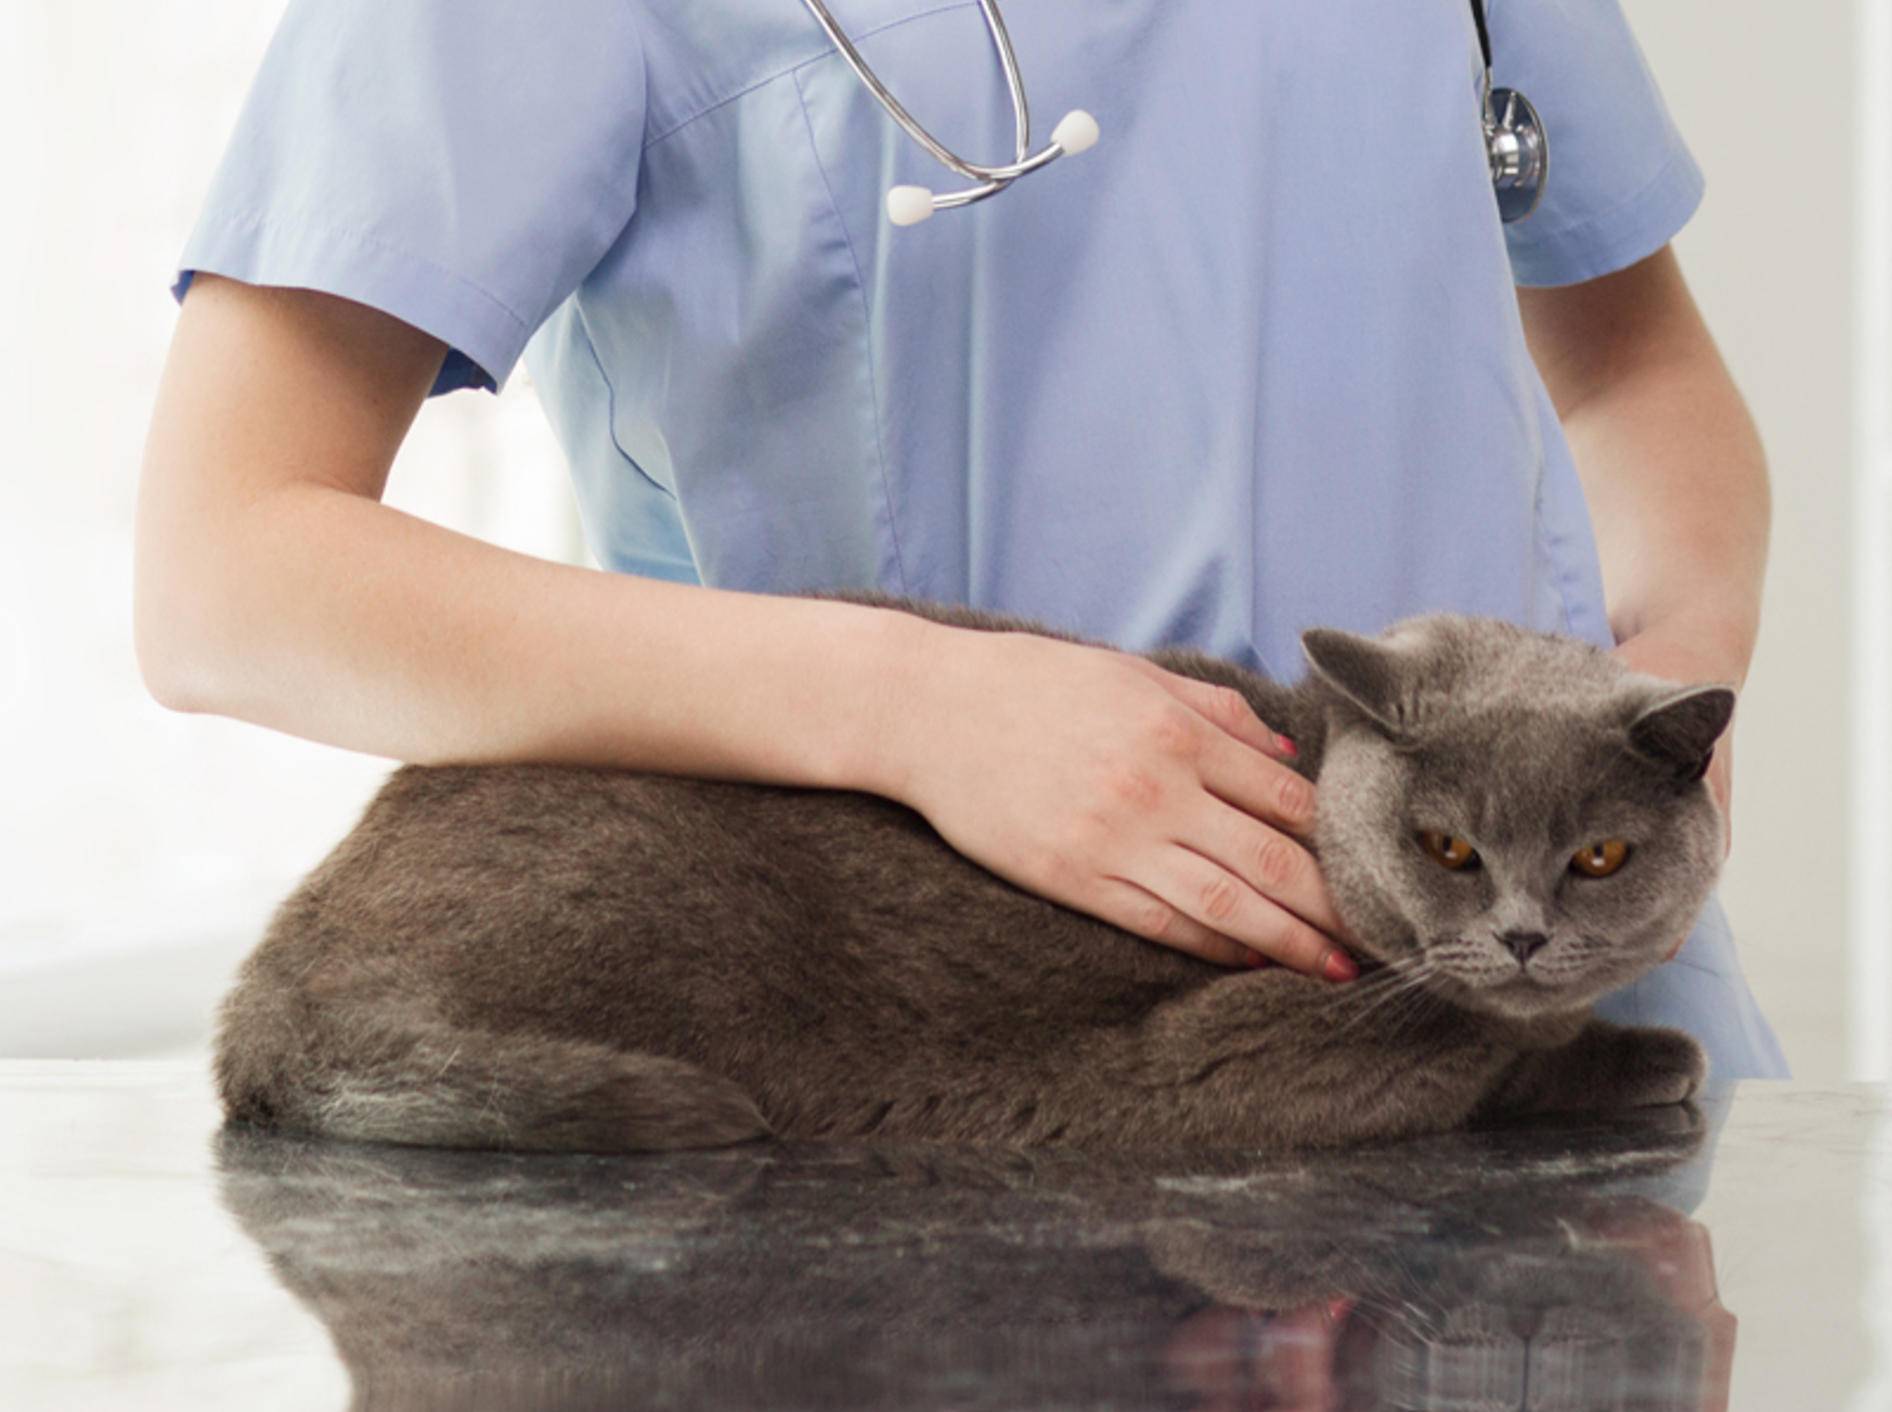 Ist eine Kastration oder Sterilisation besser für Ihre Katze? – Shutterstock / Syda Productions